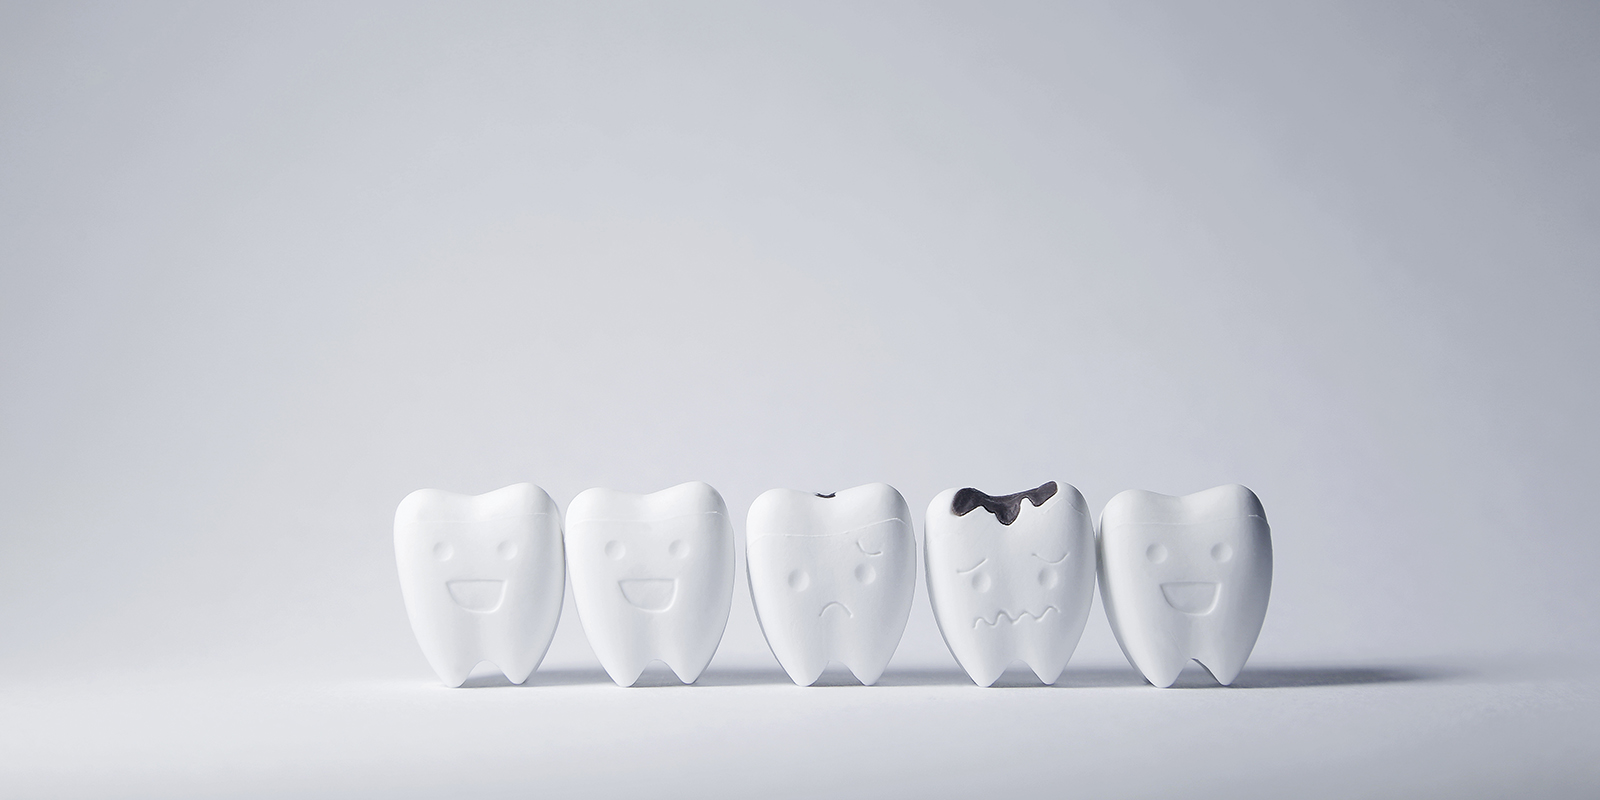 虫歯の進行と治療法